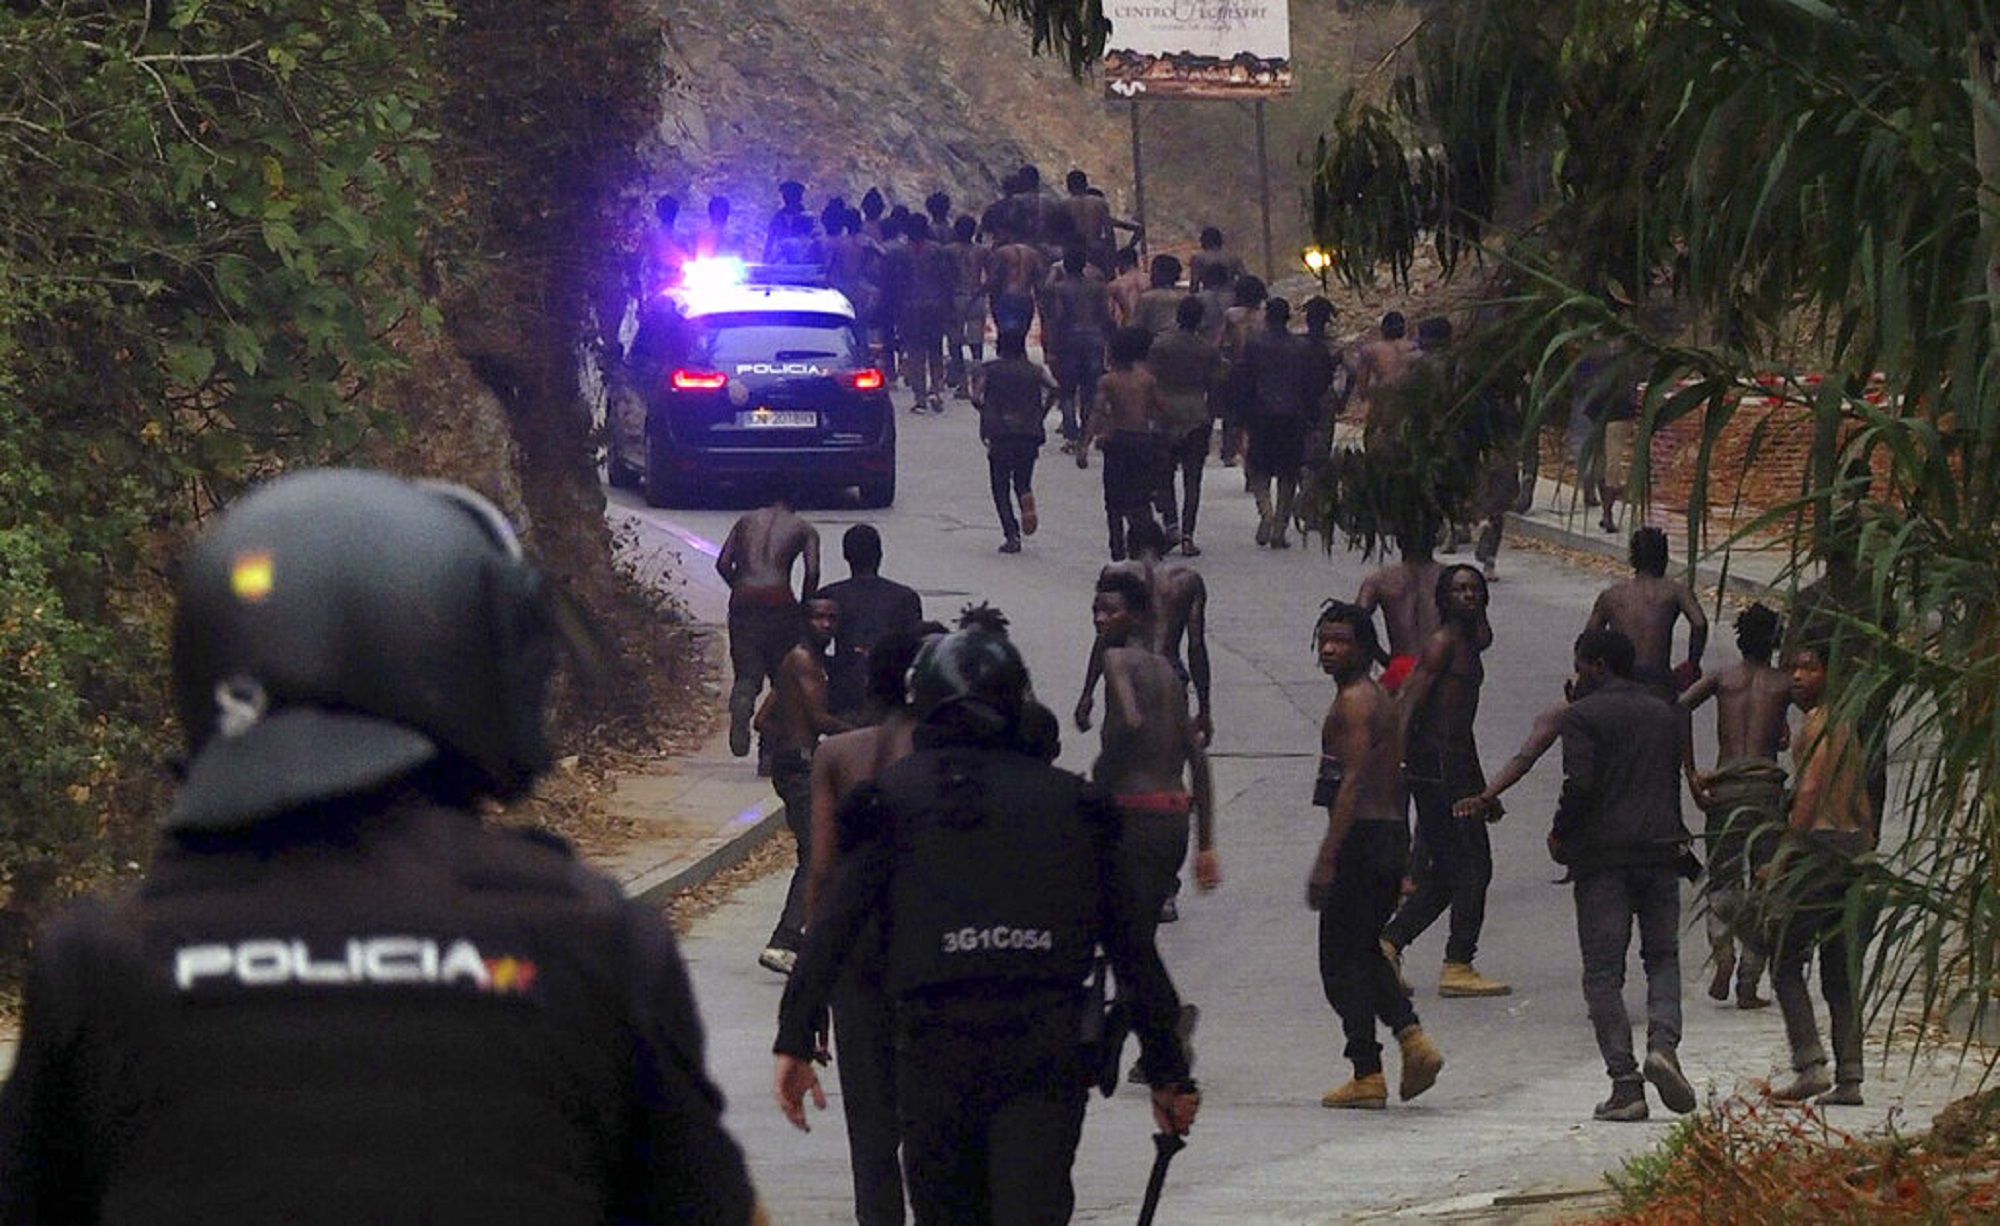 Μελίγια: Περίπου 400 υποσαχάριοι επιχείρησαν να εισέλθουν παράτυπα σε ισπανικό έδαφος